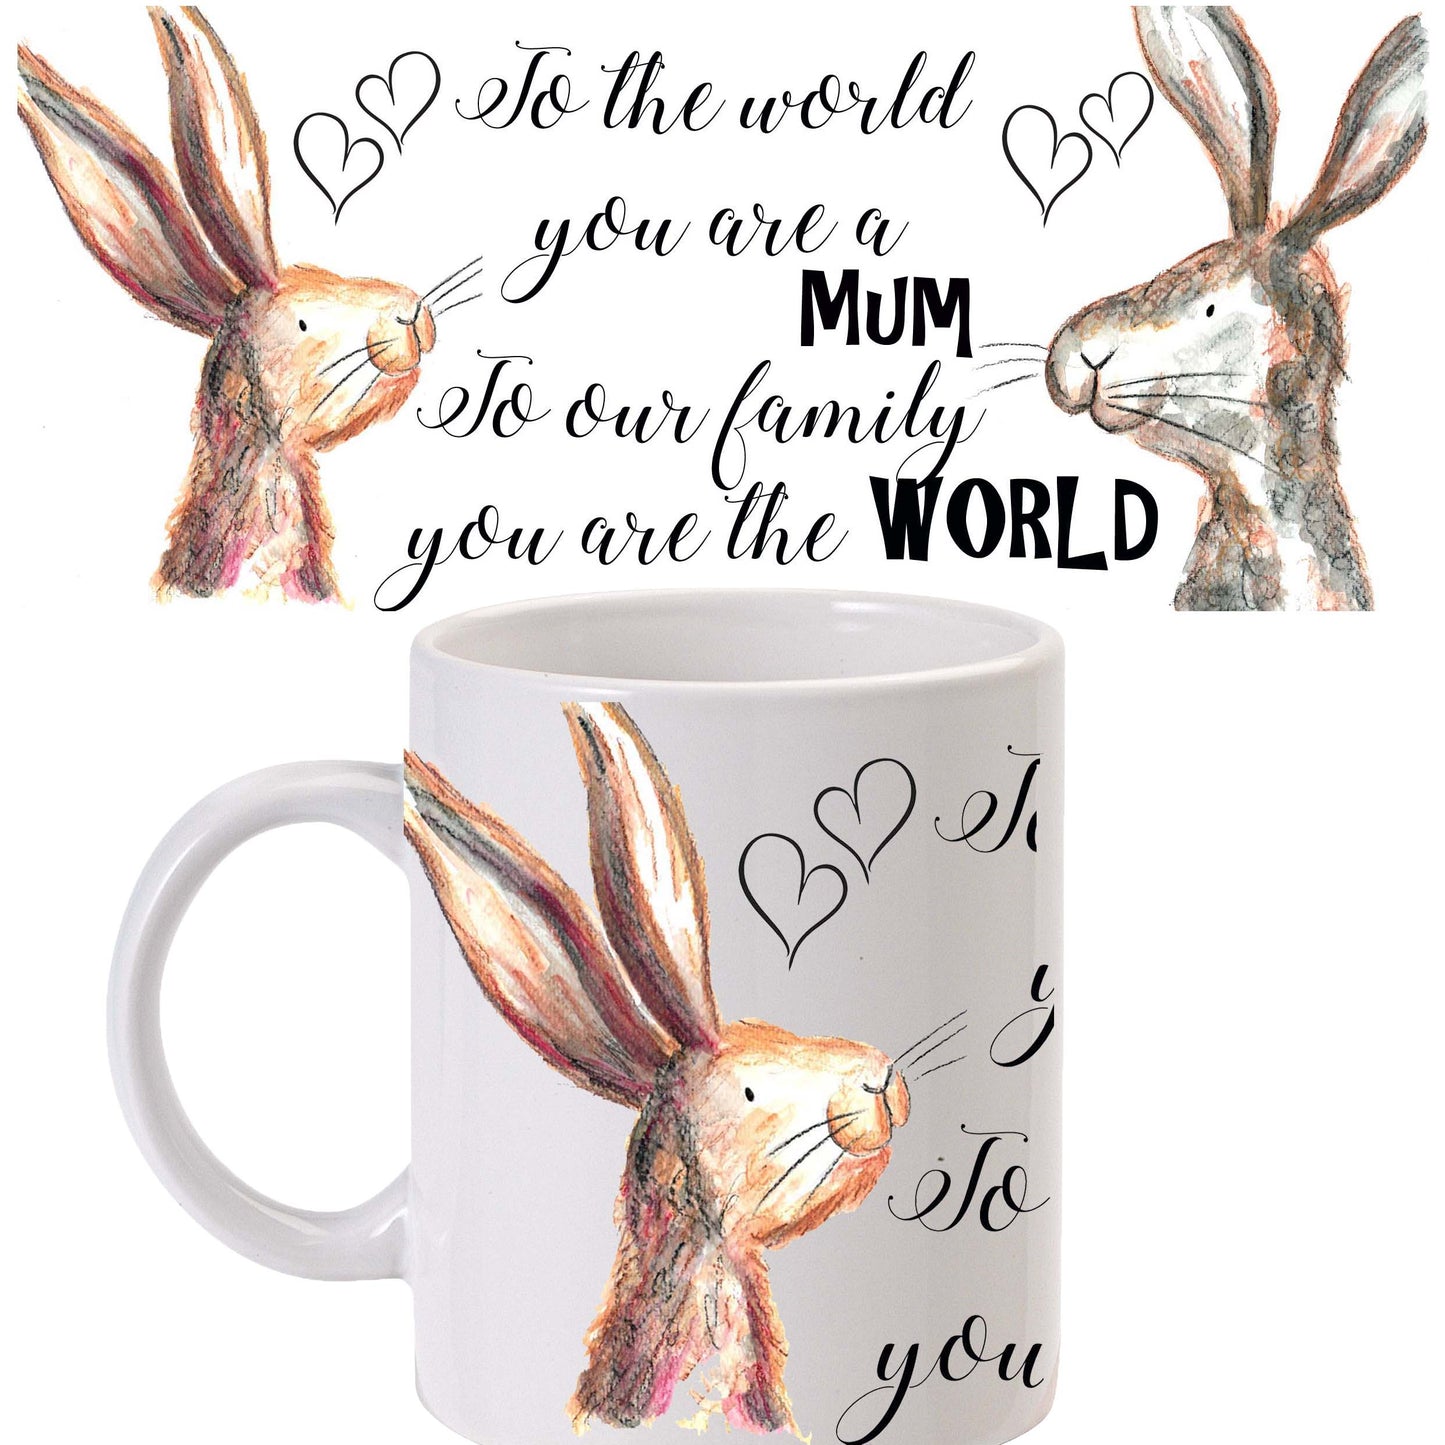 Mum rabbit mug